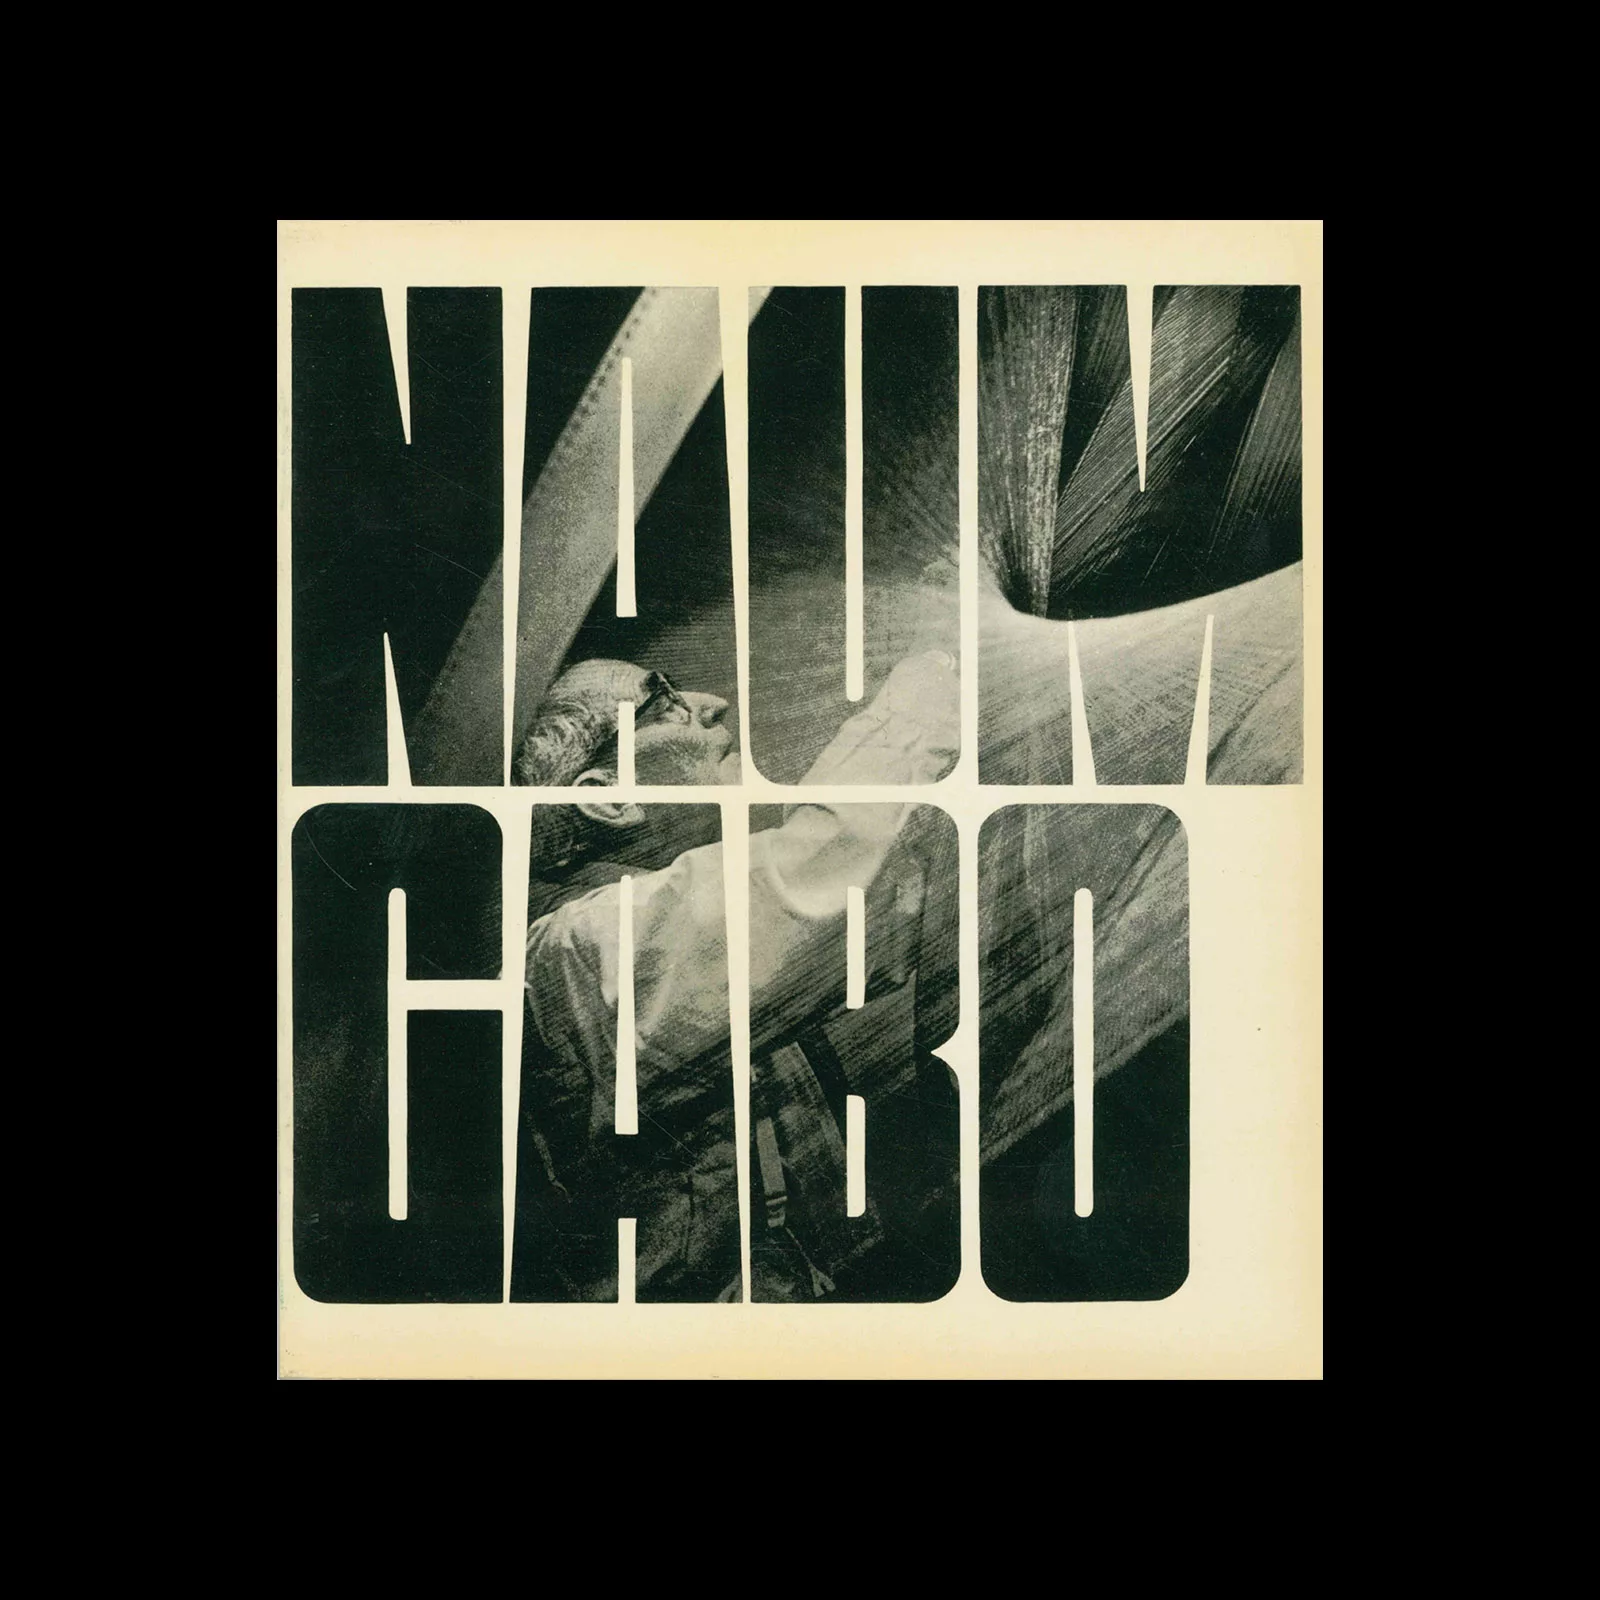 Naum Gabo, Musée National d'Art Moderne, Paris, 1971